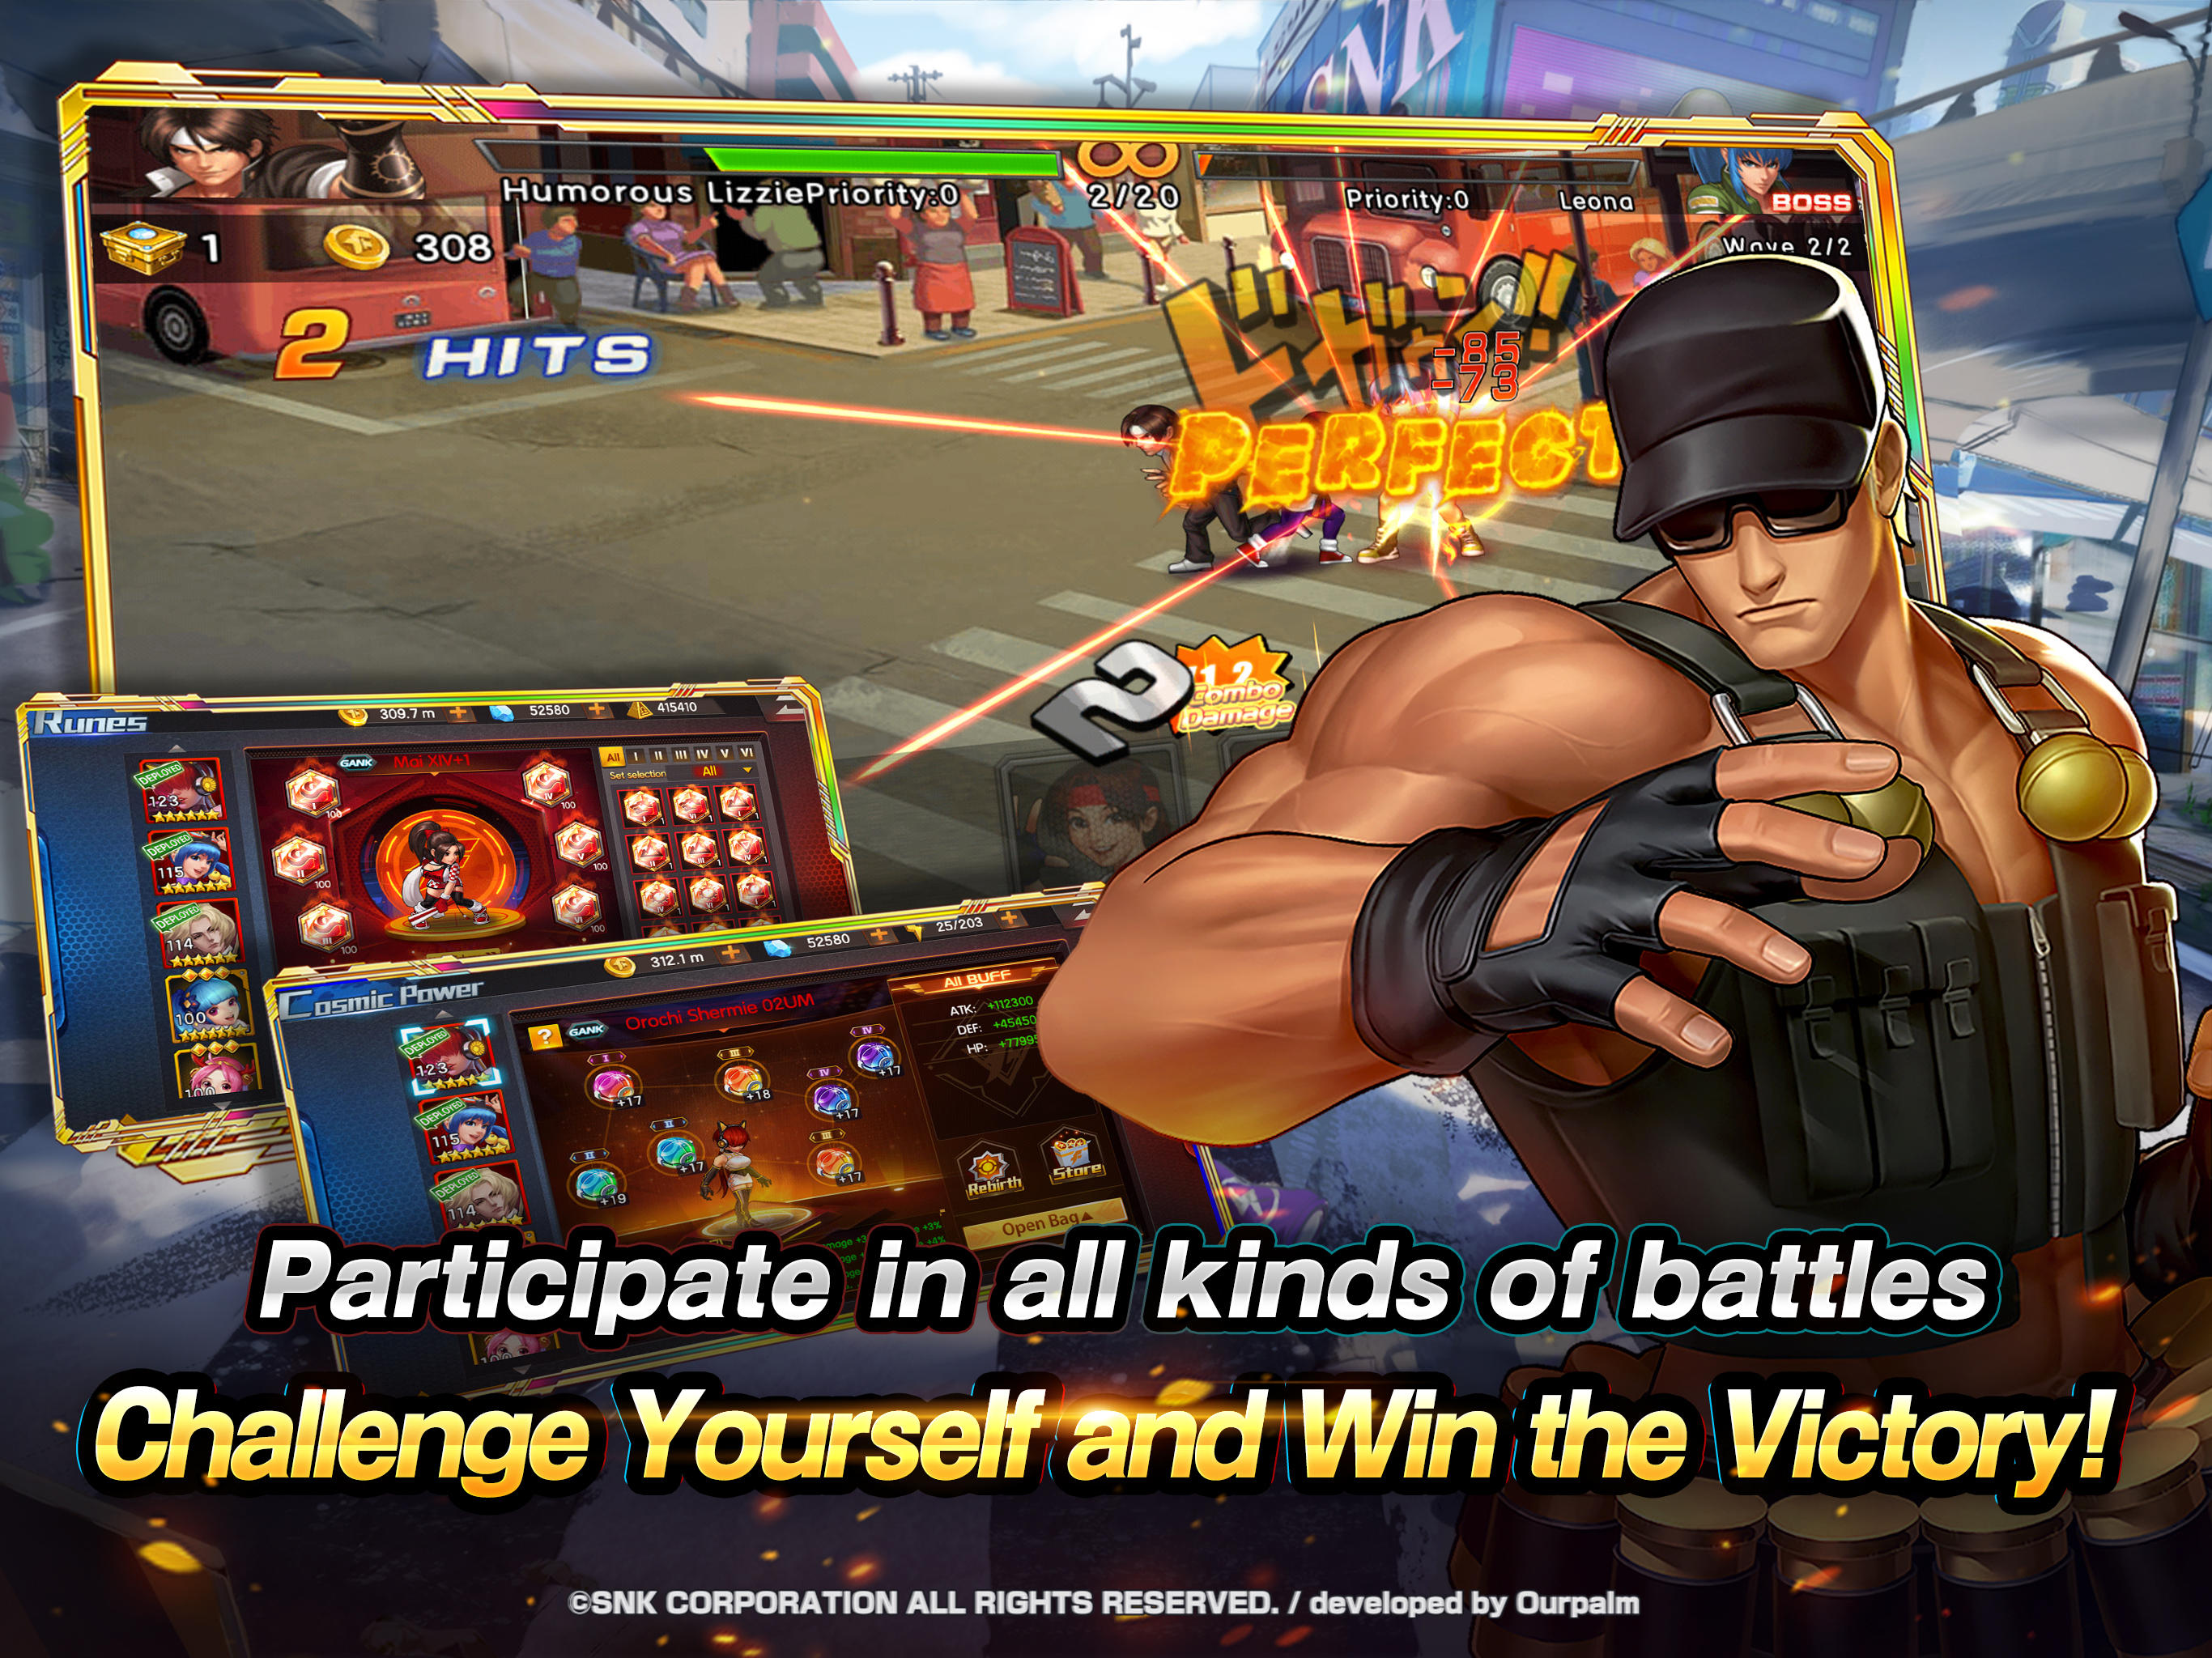 The King of Fighters 98 UM Online versão móvel andróide iOS apk baixar  gratuitamente-TapTap